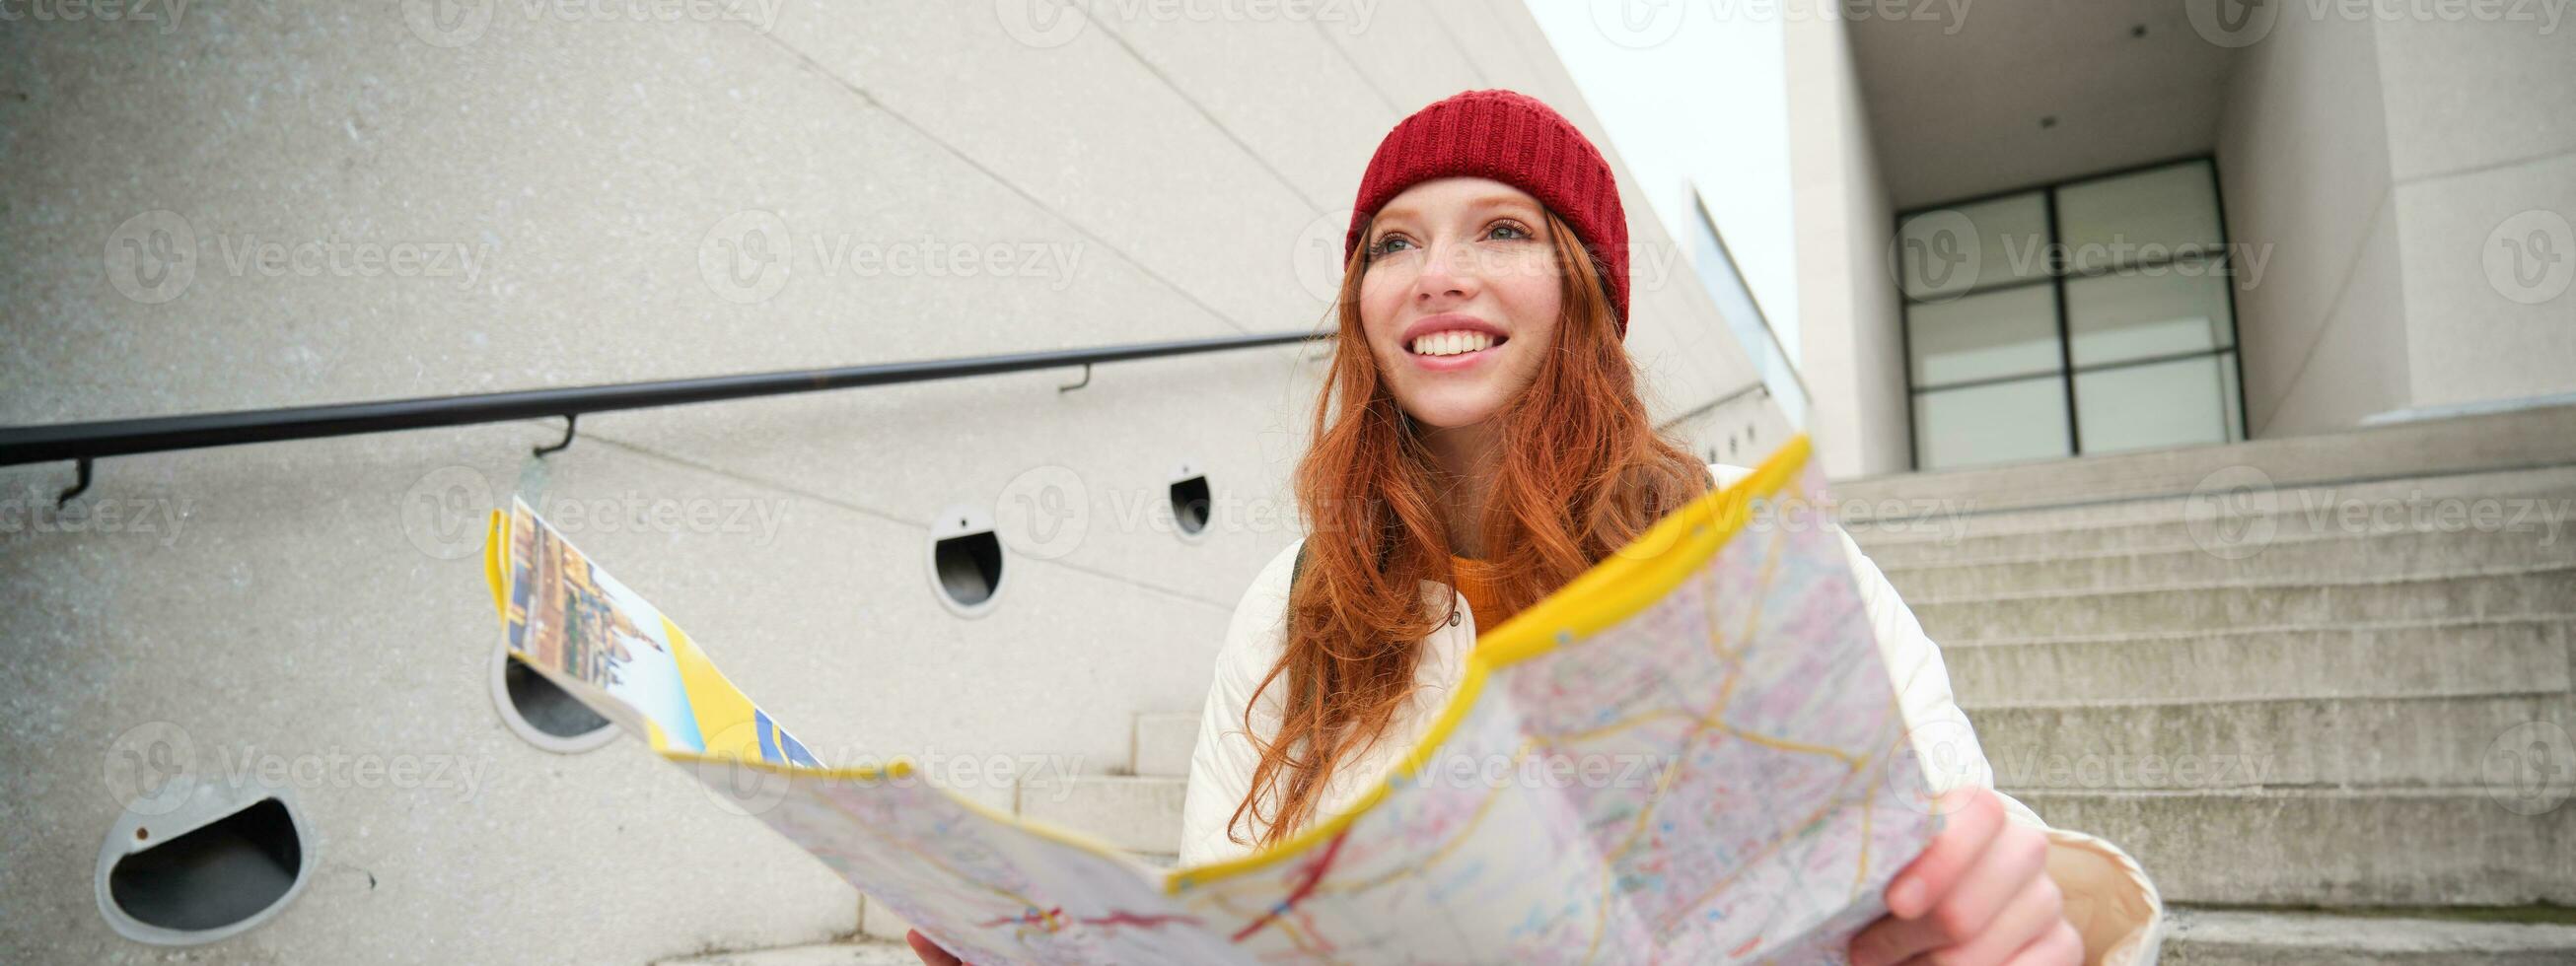 ung leende rödhårig flicka, turist sitter på trappa utomhus med stad papper Karta, ser för riktning, resande backpacker utforskar stad och utseende för sightseeing foto